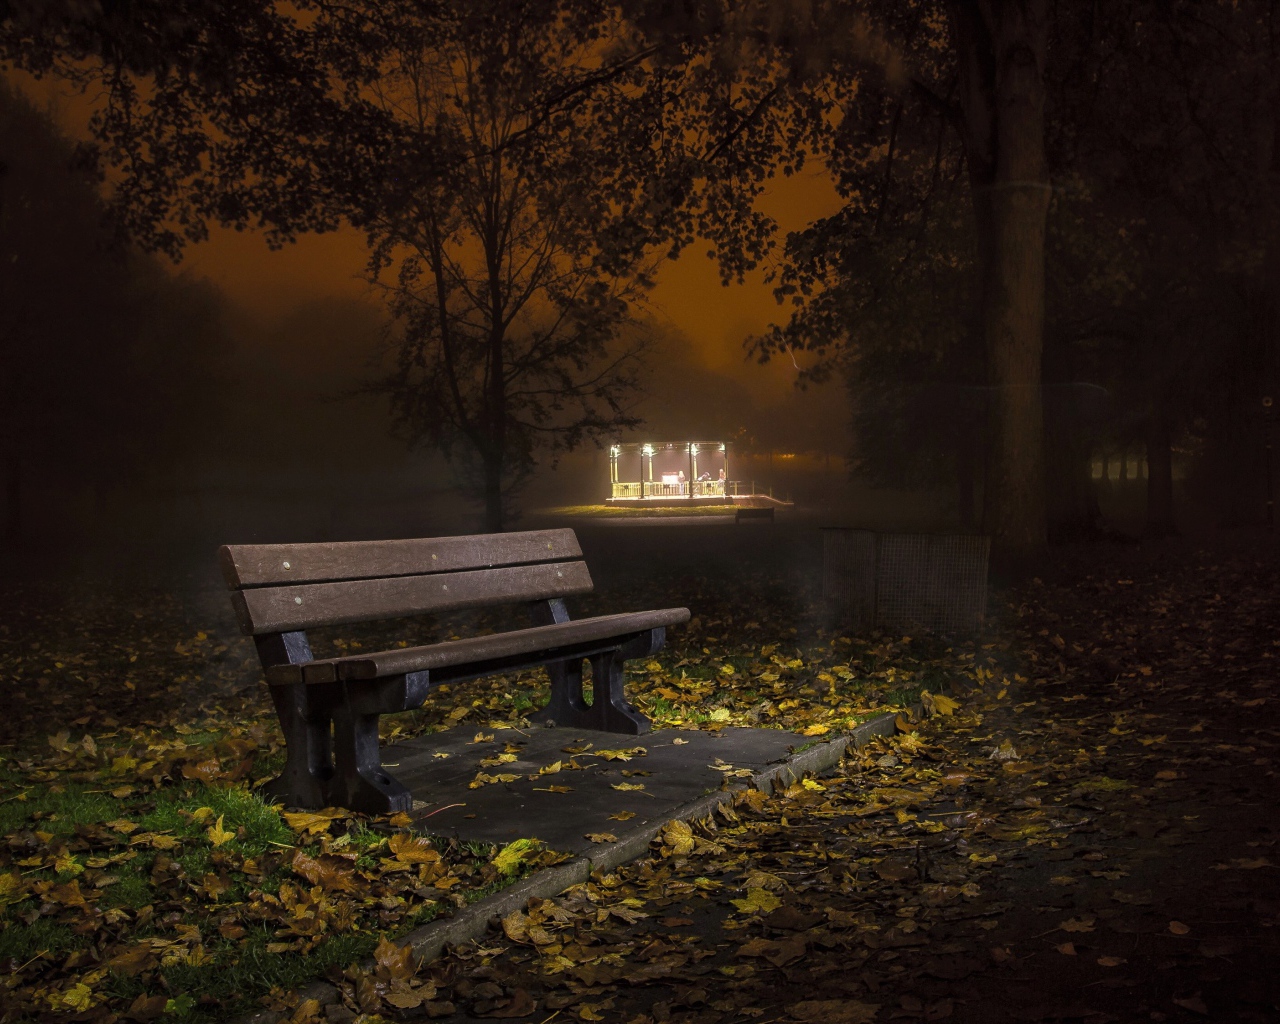 Одинокая скамейка в осеннем парке ночью